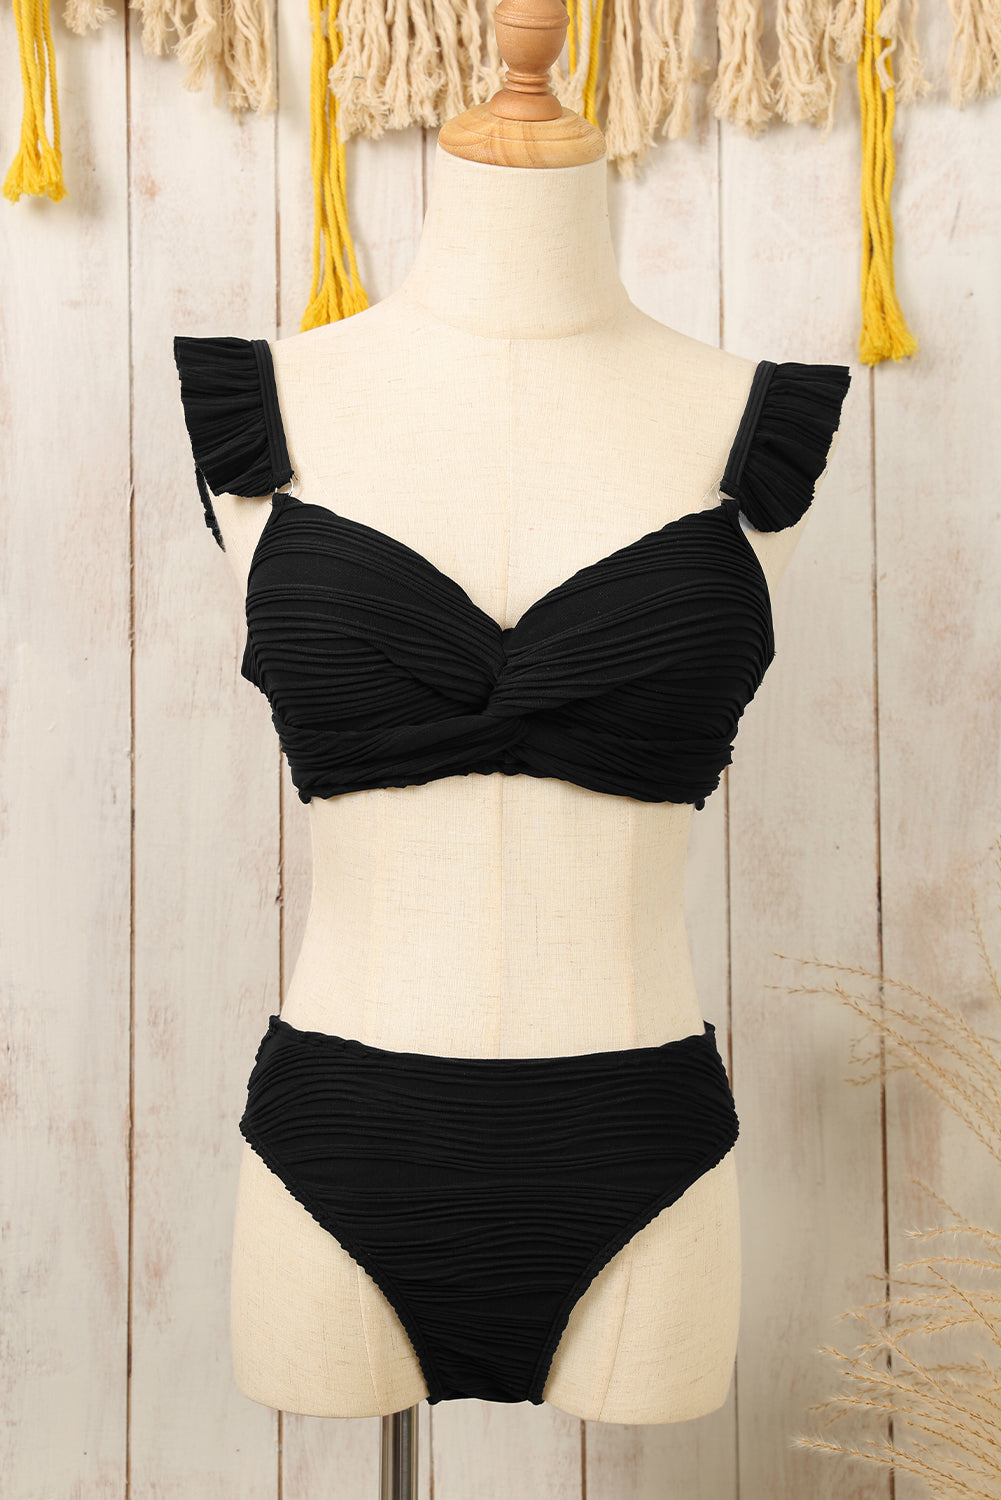 Crni kupaći kostim s valovitom teksturom i uvijenim naramenicama